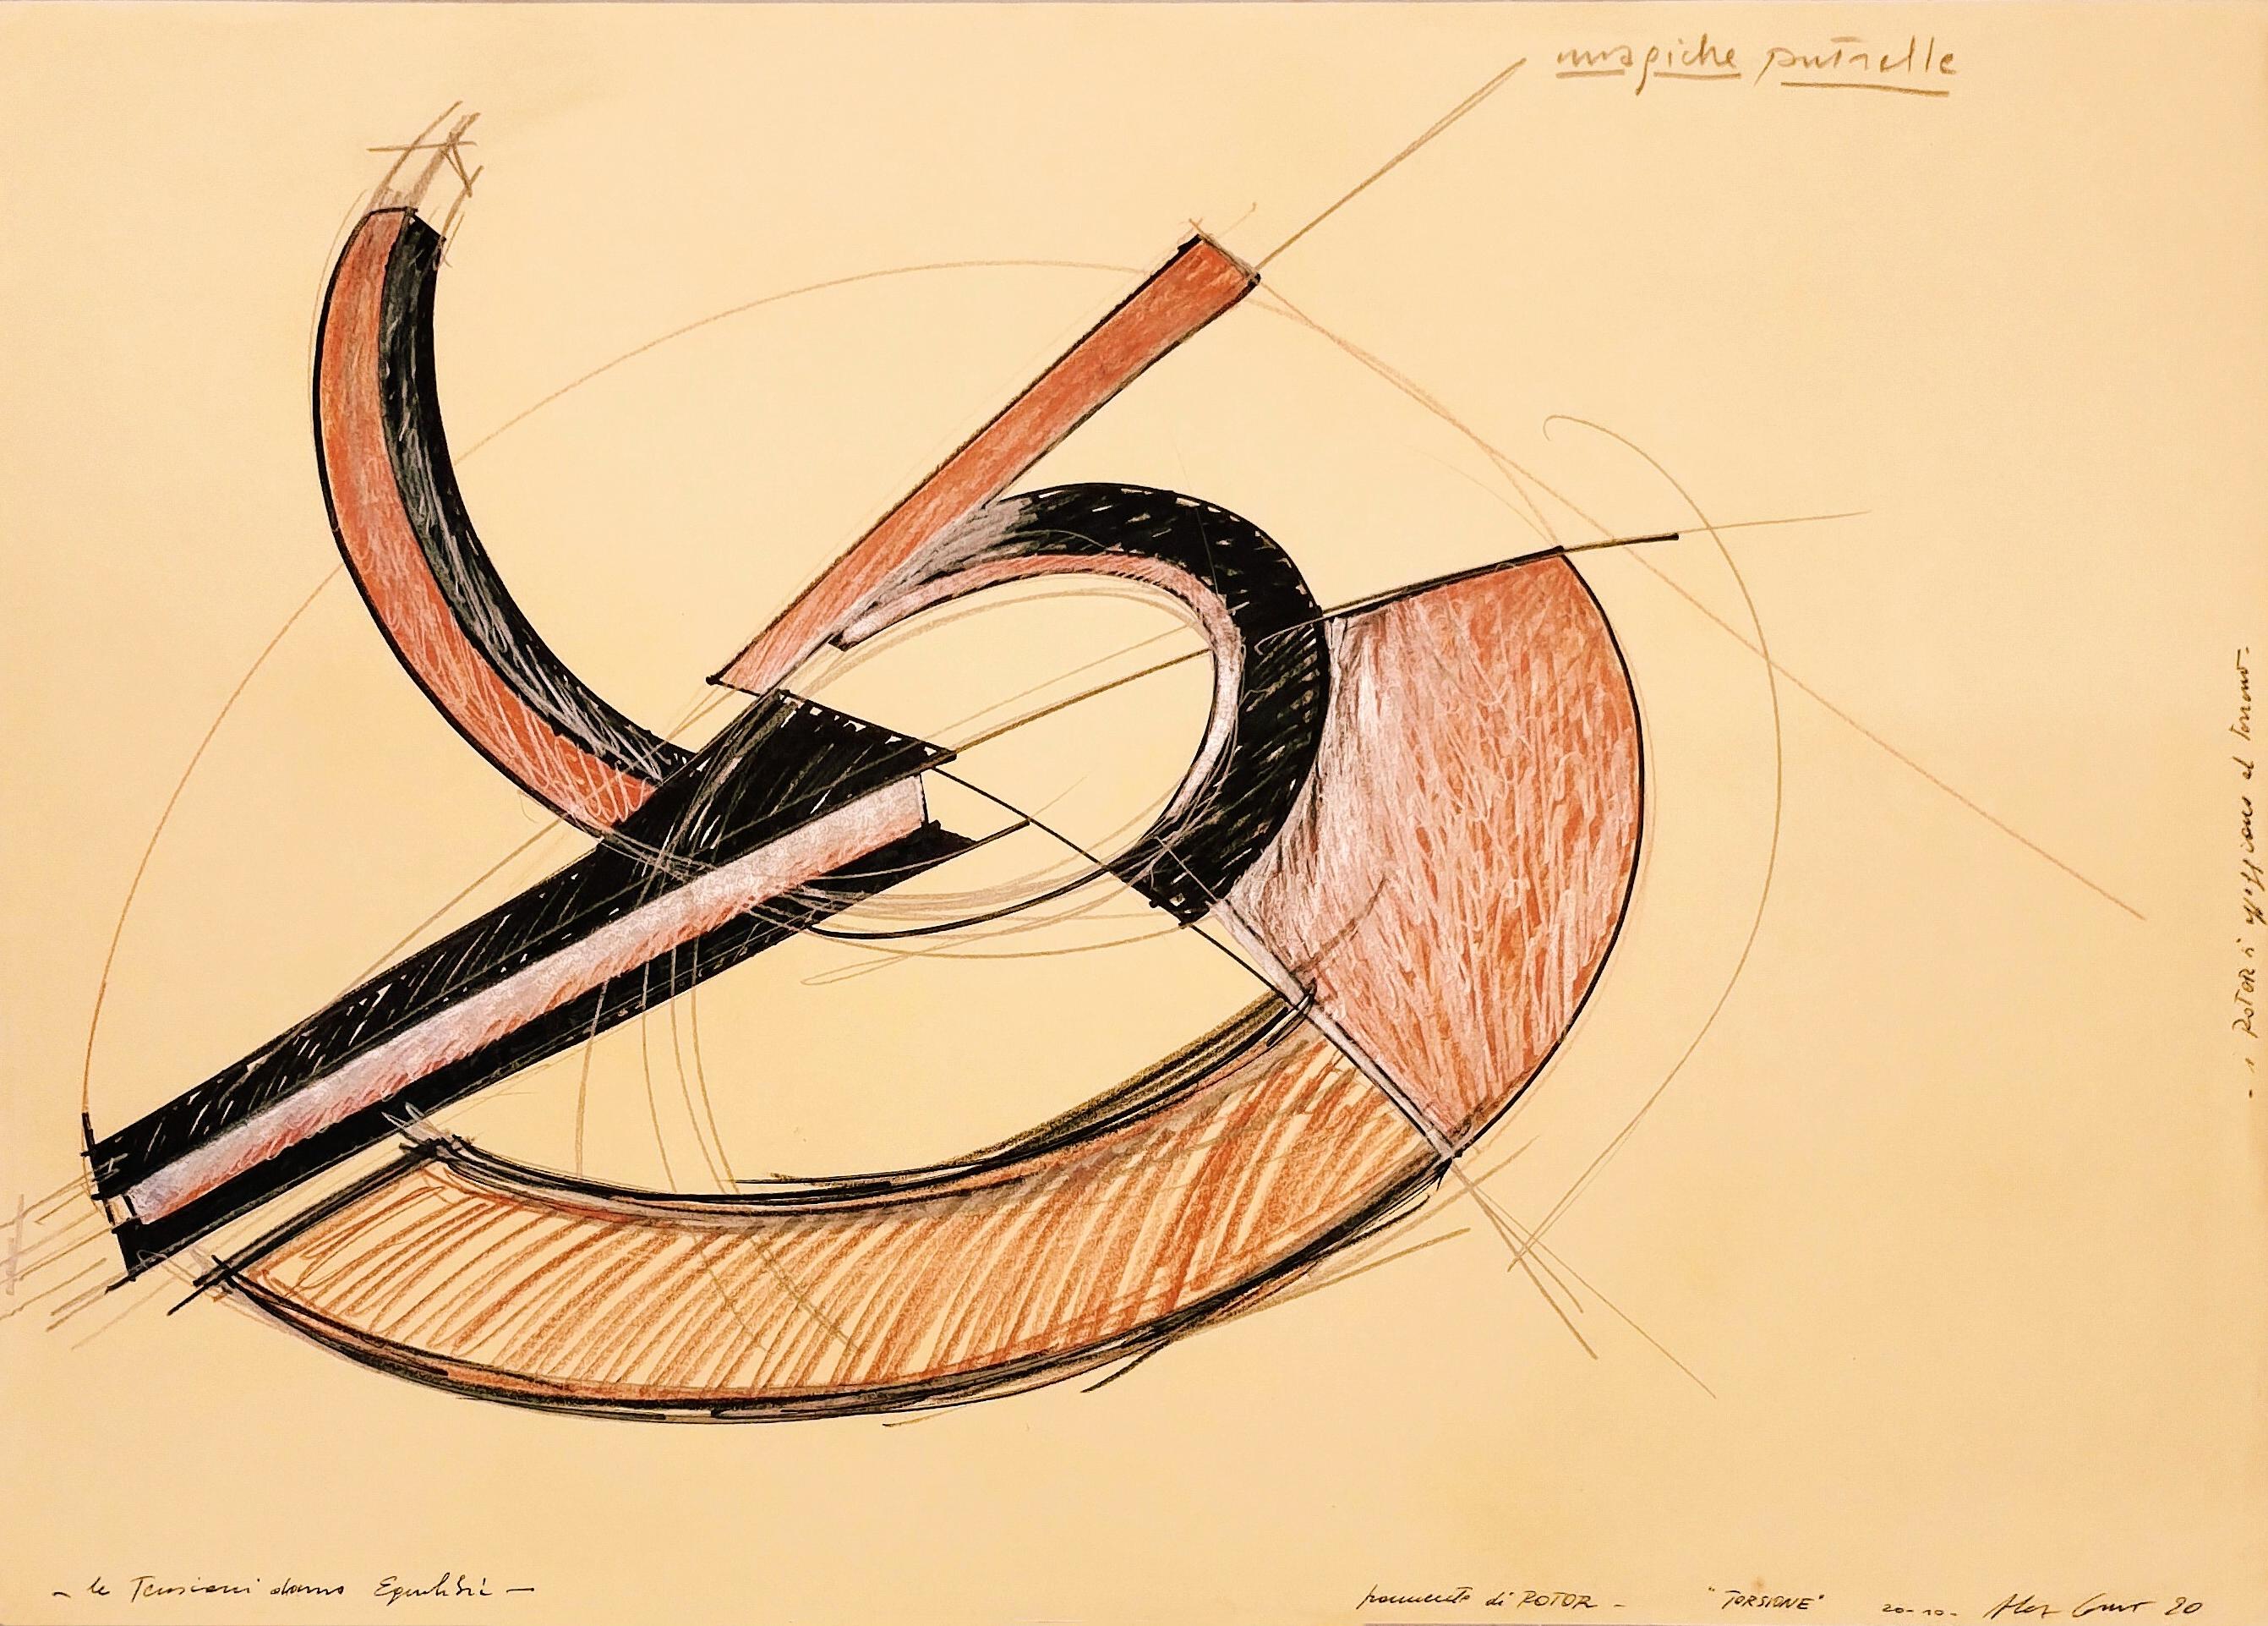 Alex Corno Abstract Drawing - Magiche putrelle le tensioni danno equilibrio frammento di rotor